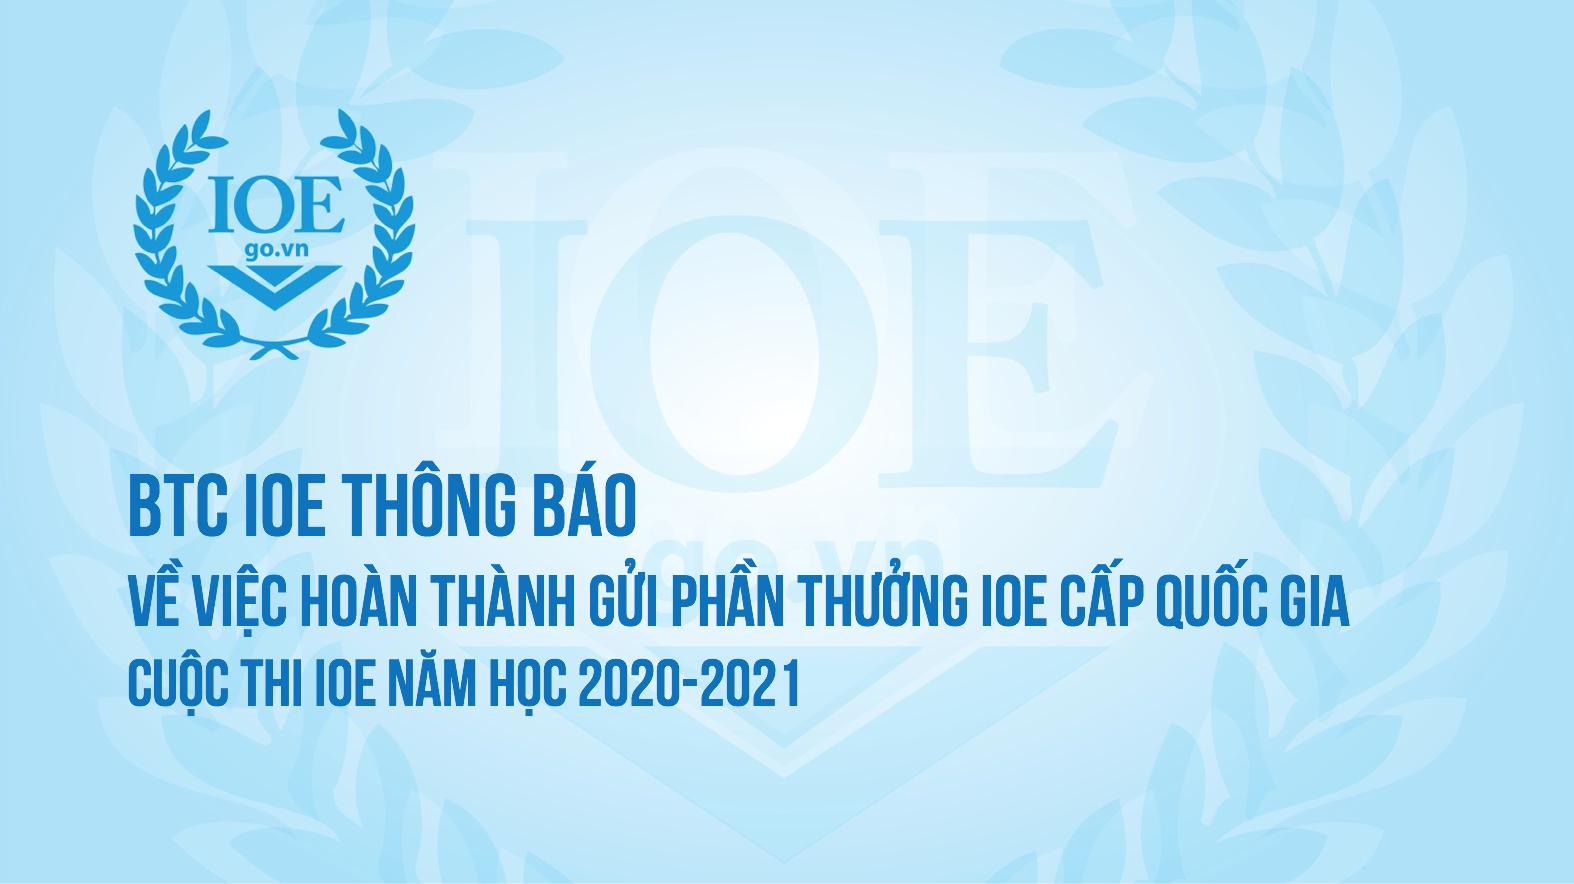 BTC IOE THÔNG BÁO Về việc hoàn thành gửi phần thưởng IOE cấp Quốc gia cuộc thi IOE năm học 2020-2021